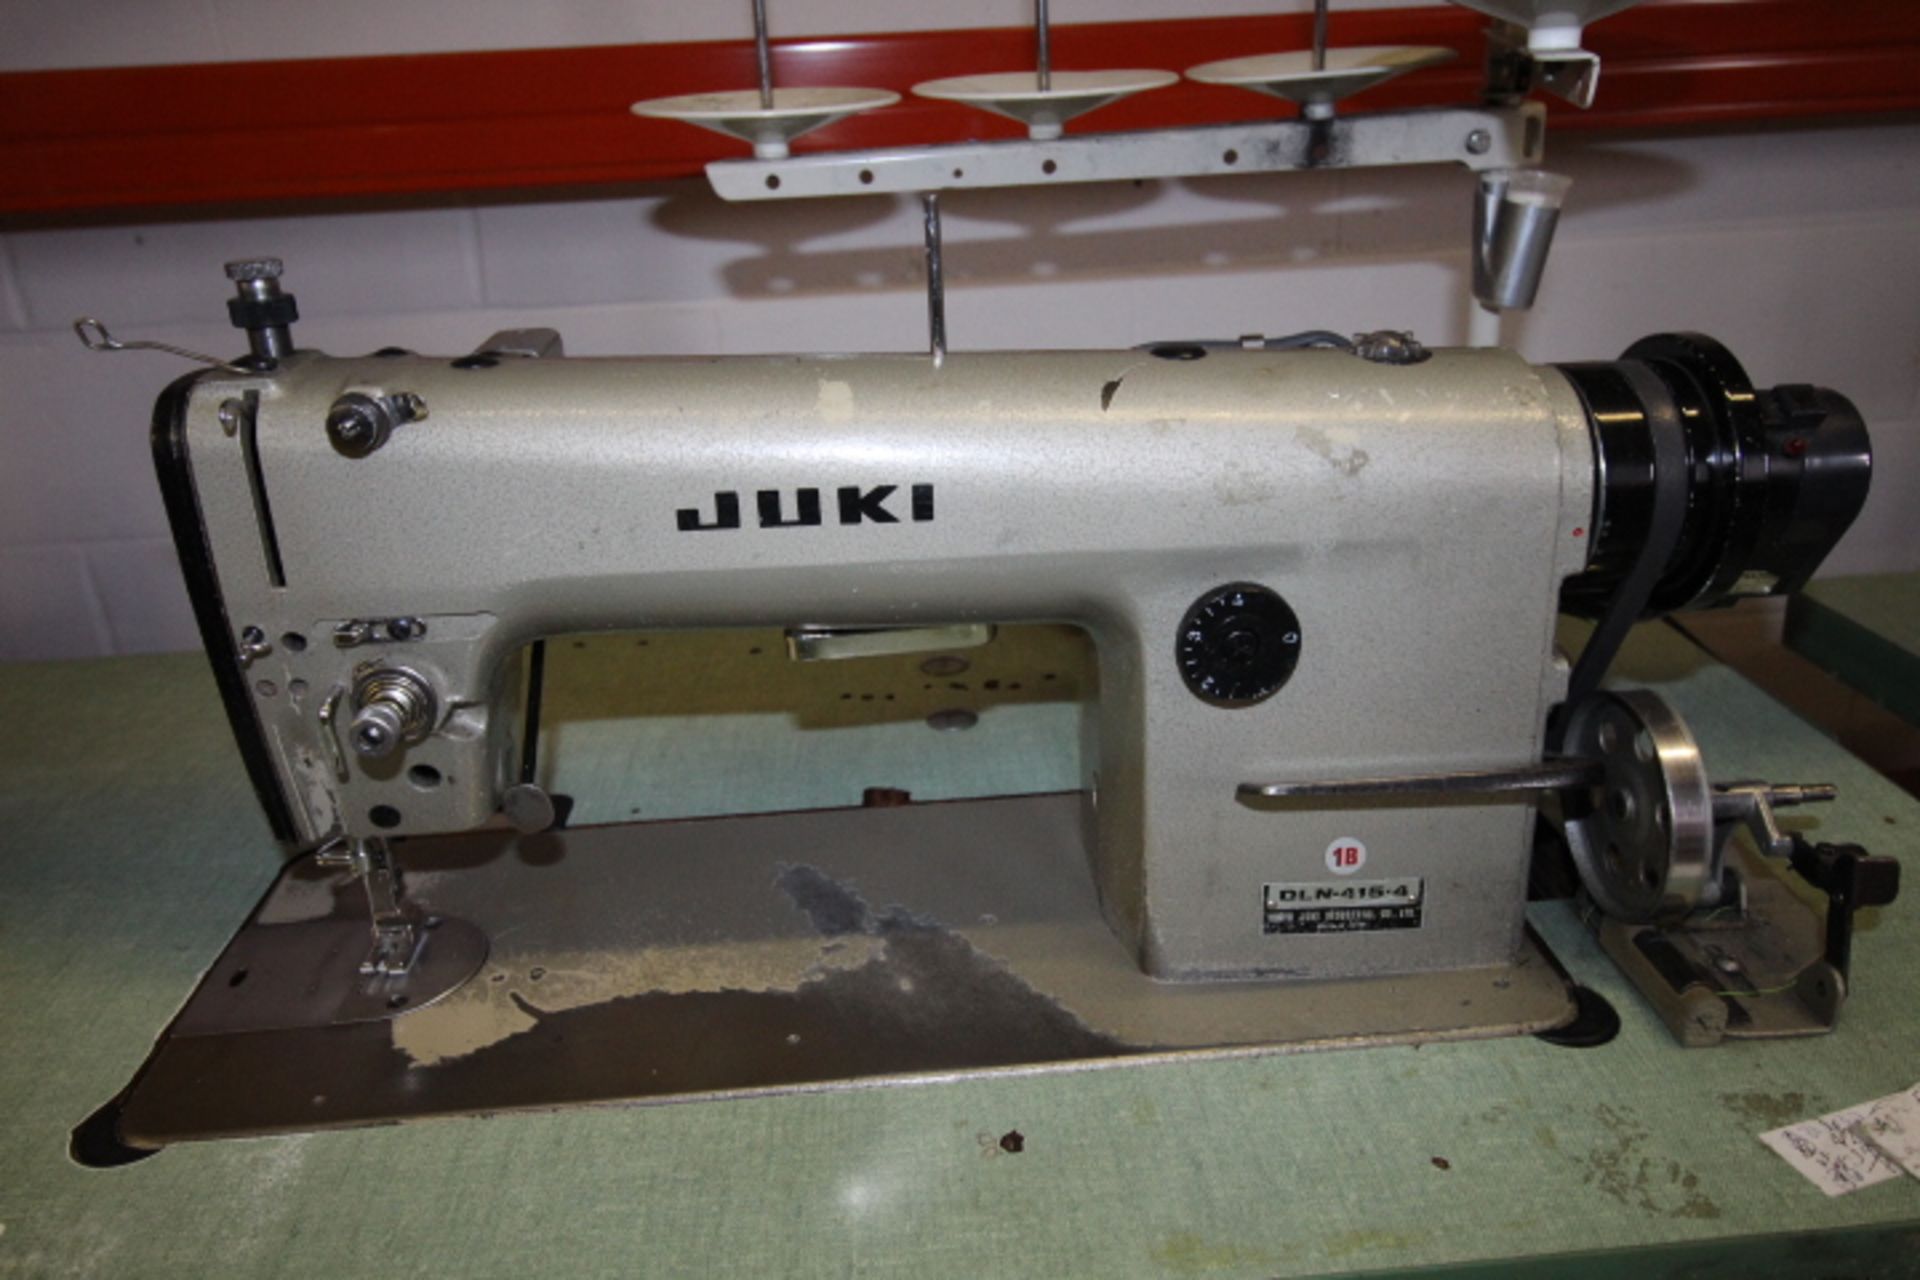 Juki Straight Stitch Sewing Machine 3phase Pneumatic, M#DLN 415 4 - Image 2 of 3